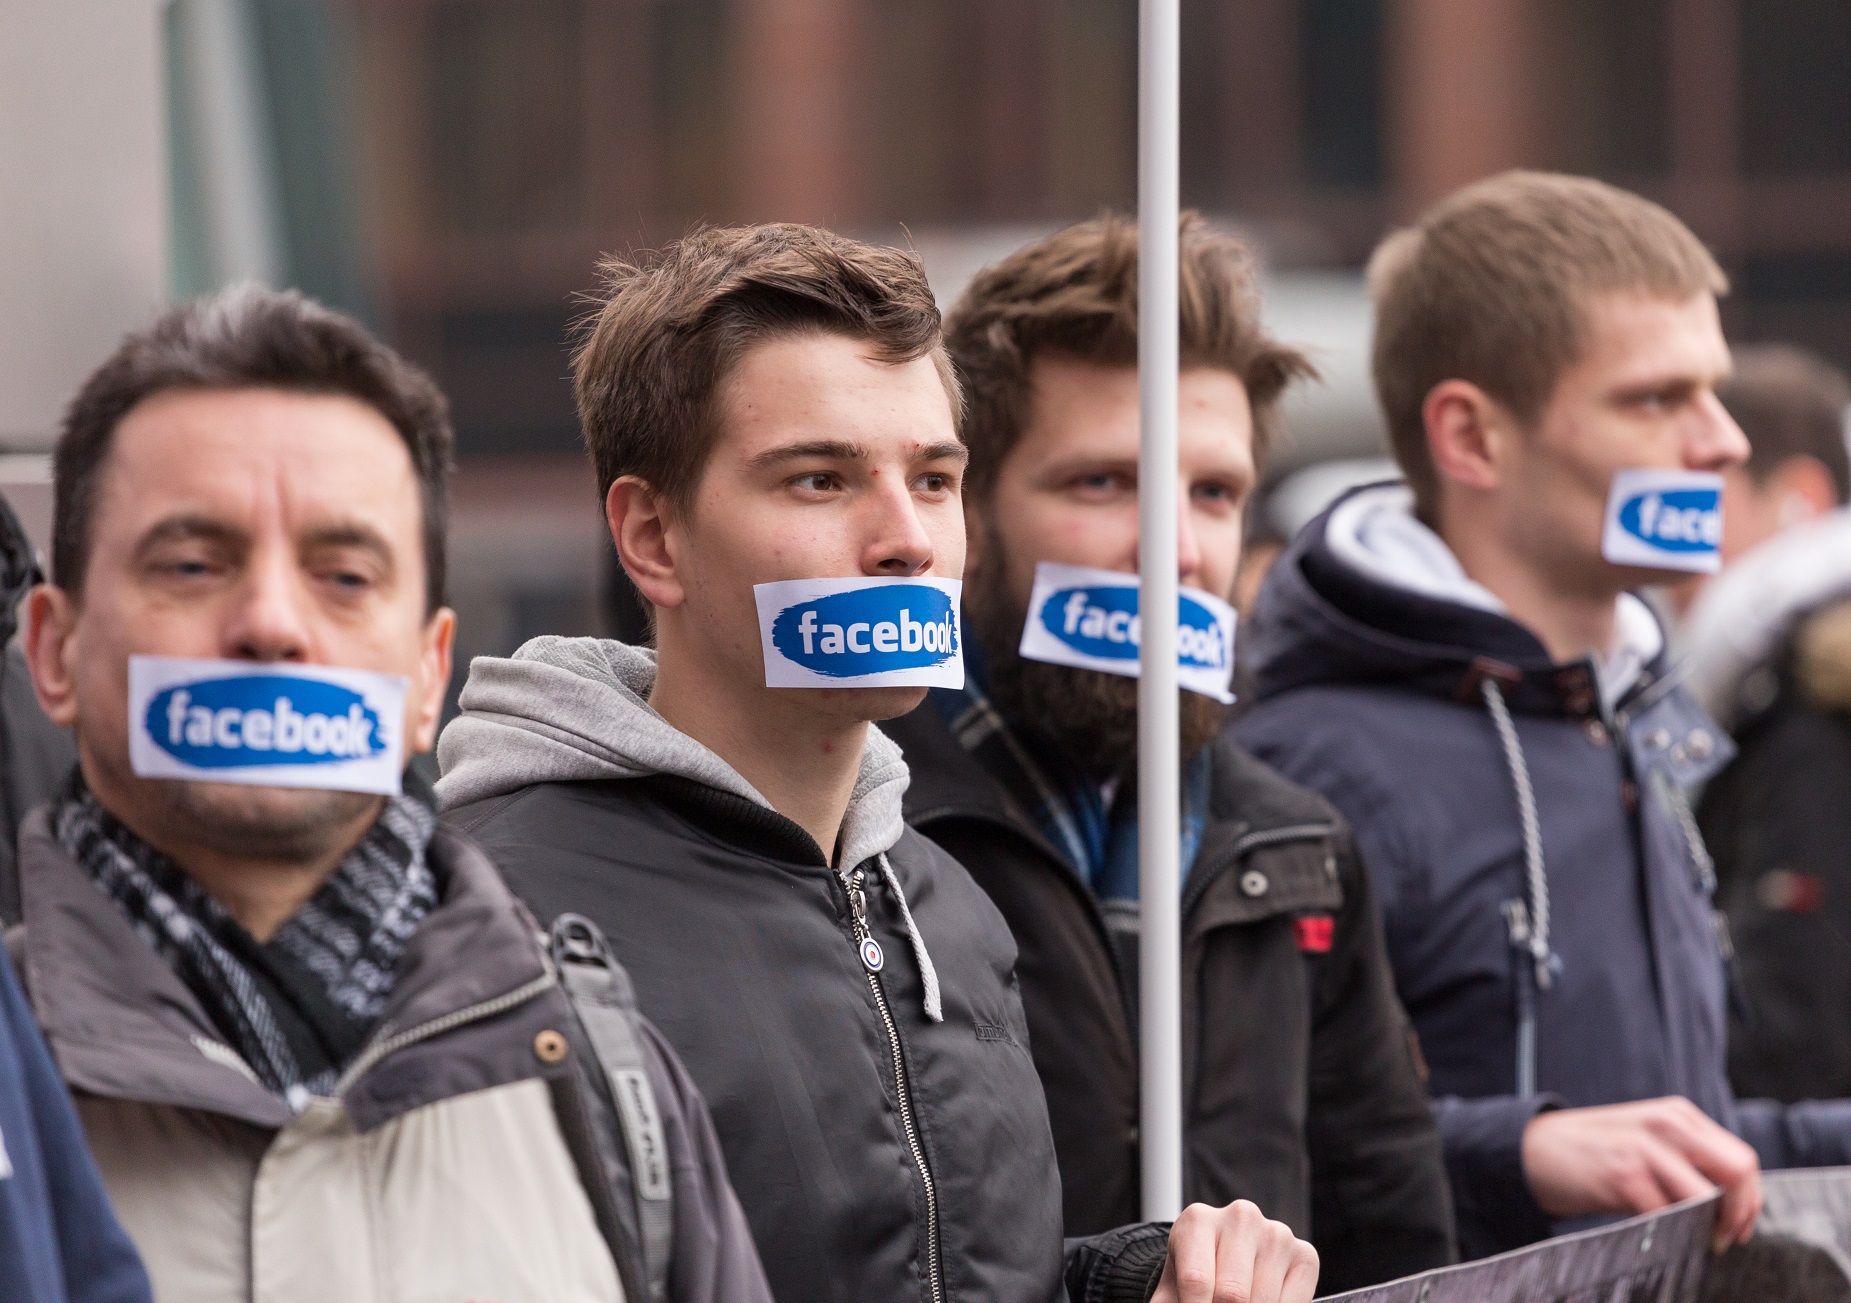 Manifestantes de extrema-direita na Polônia protestam contra o Facebook. Foto Mateusz Wlodarczyk/NurPhoto